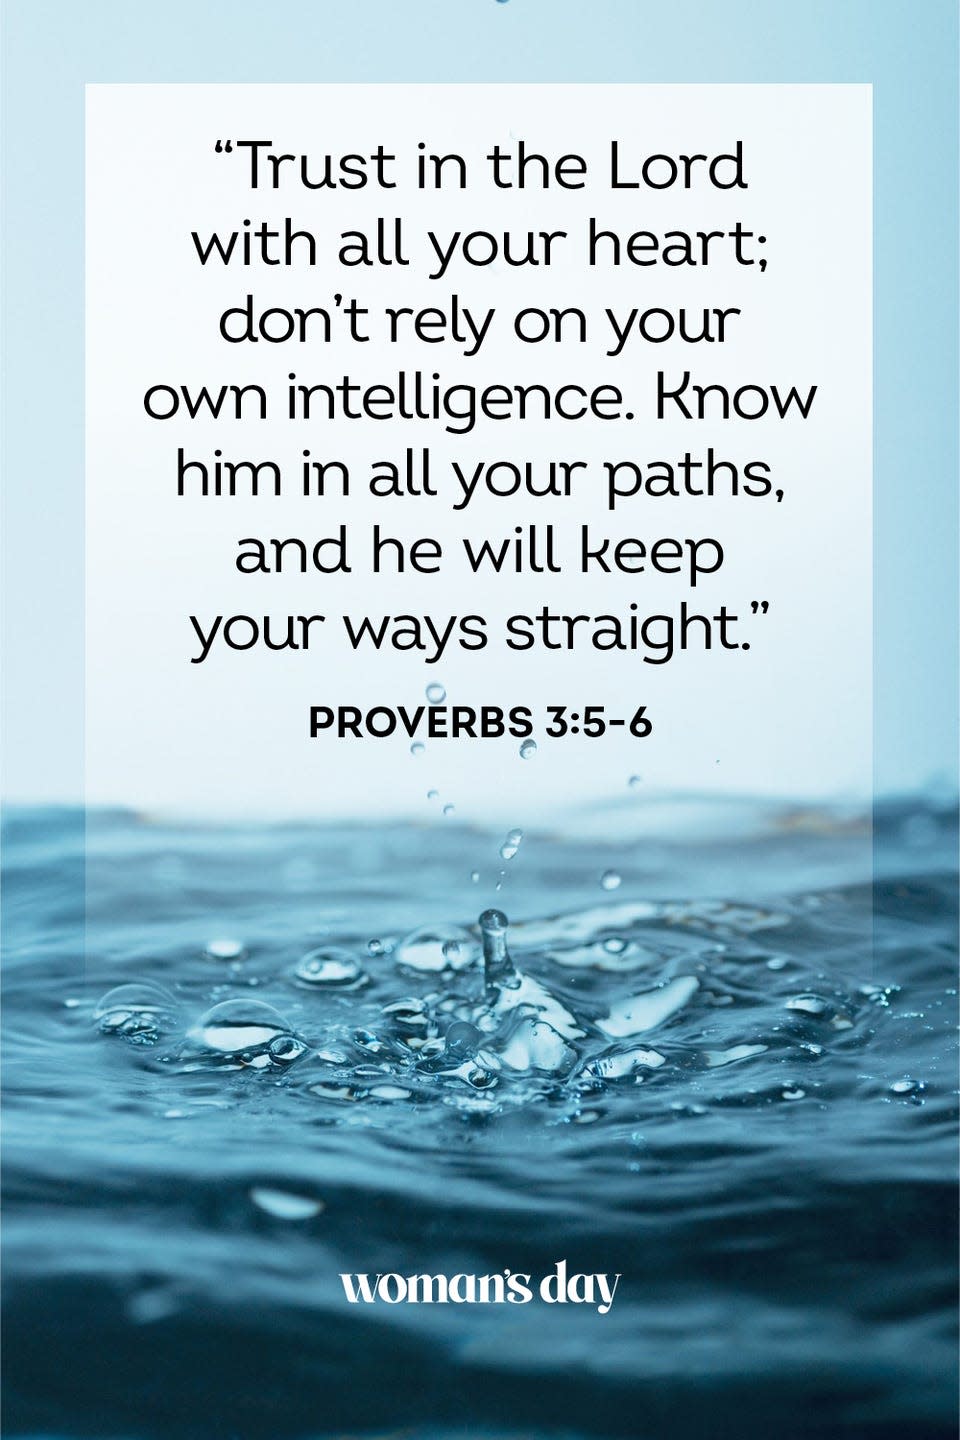 4) Proverbs 3:5-6